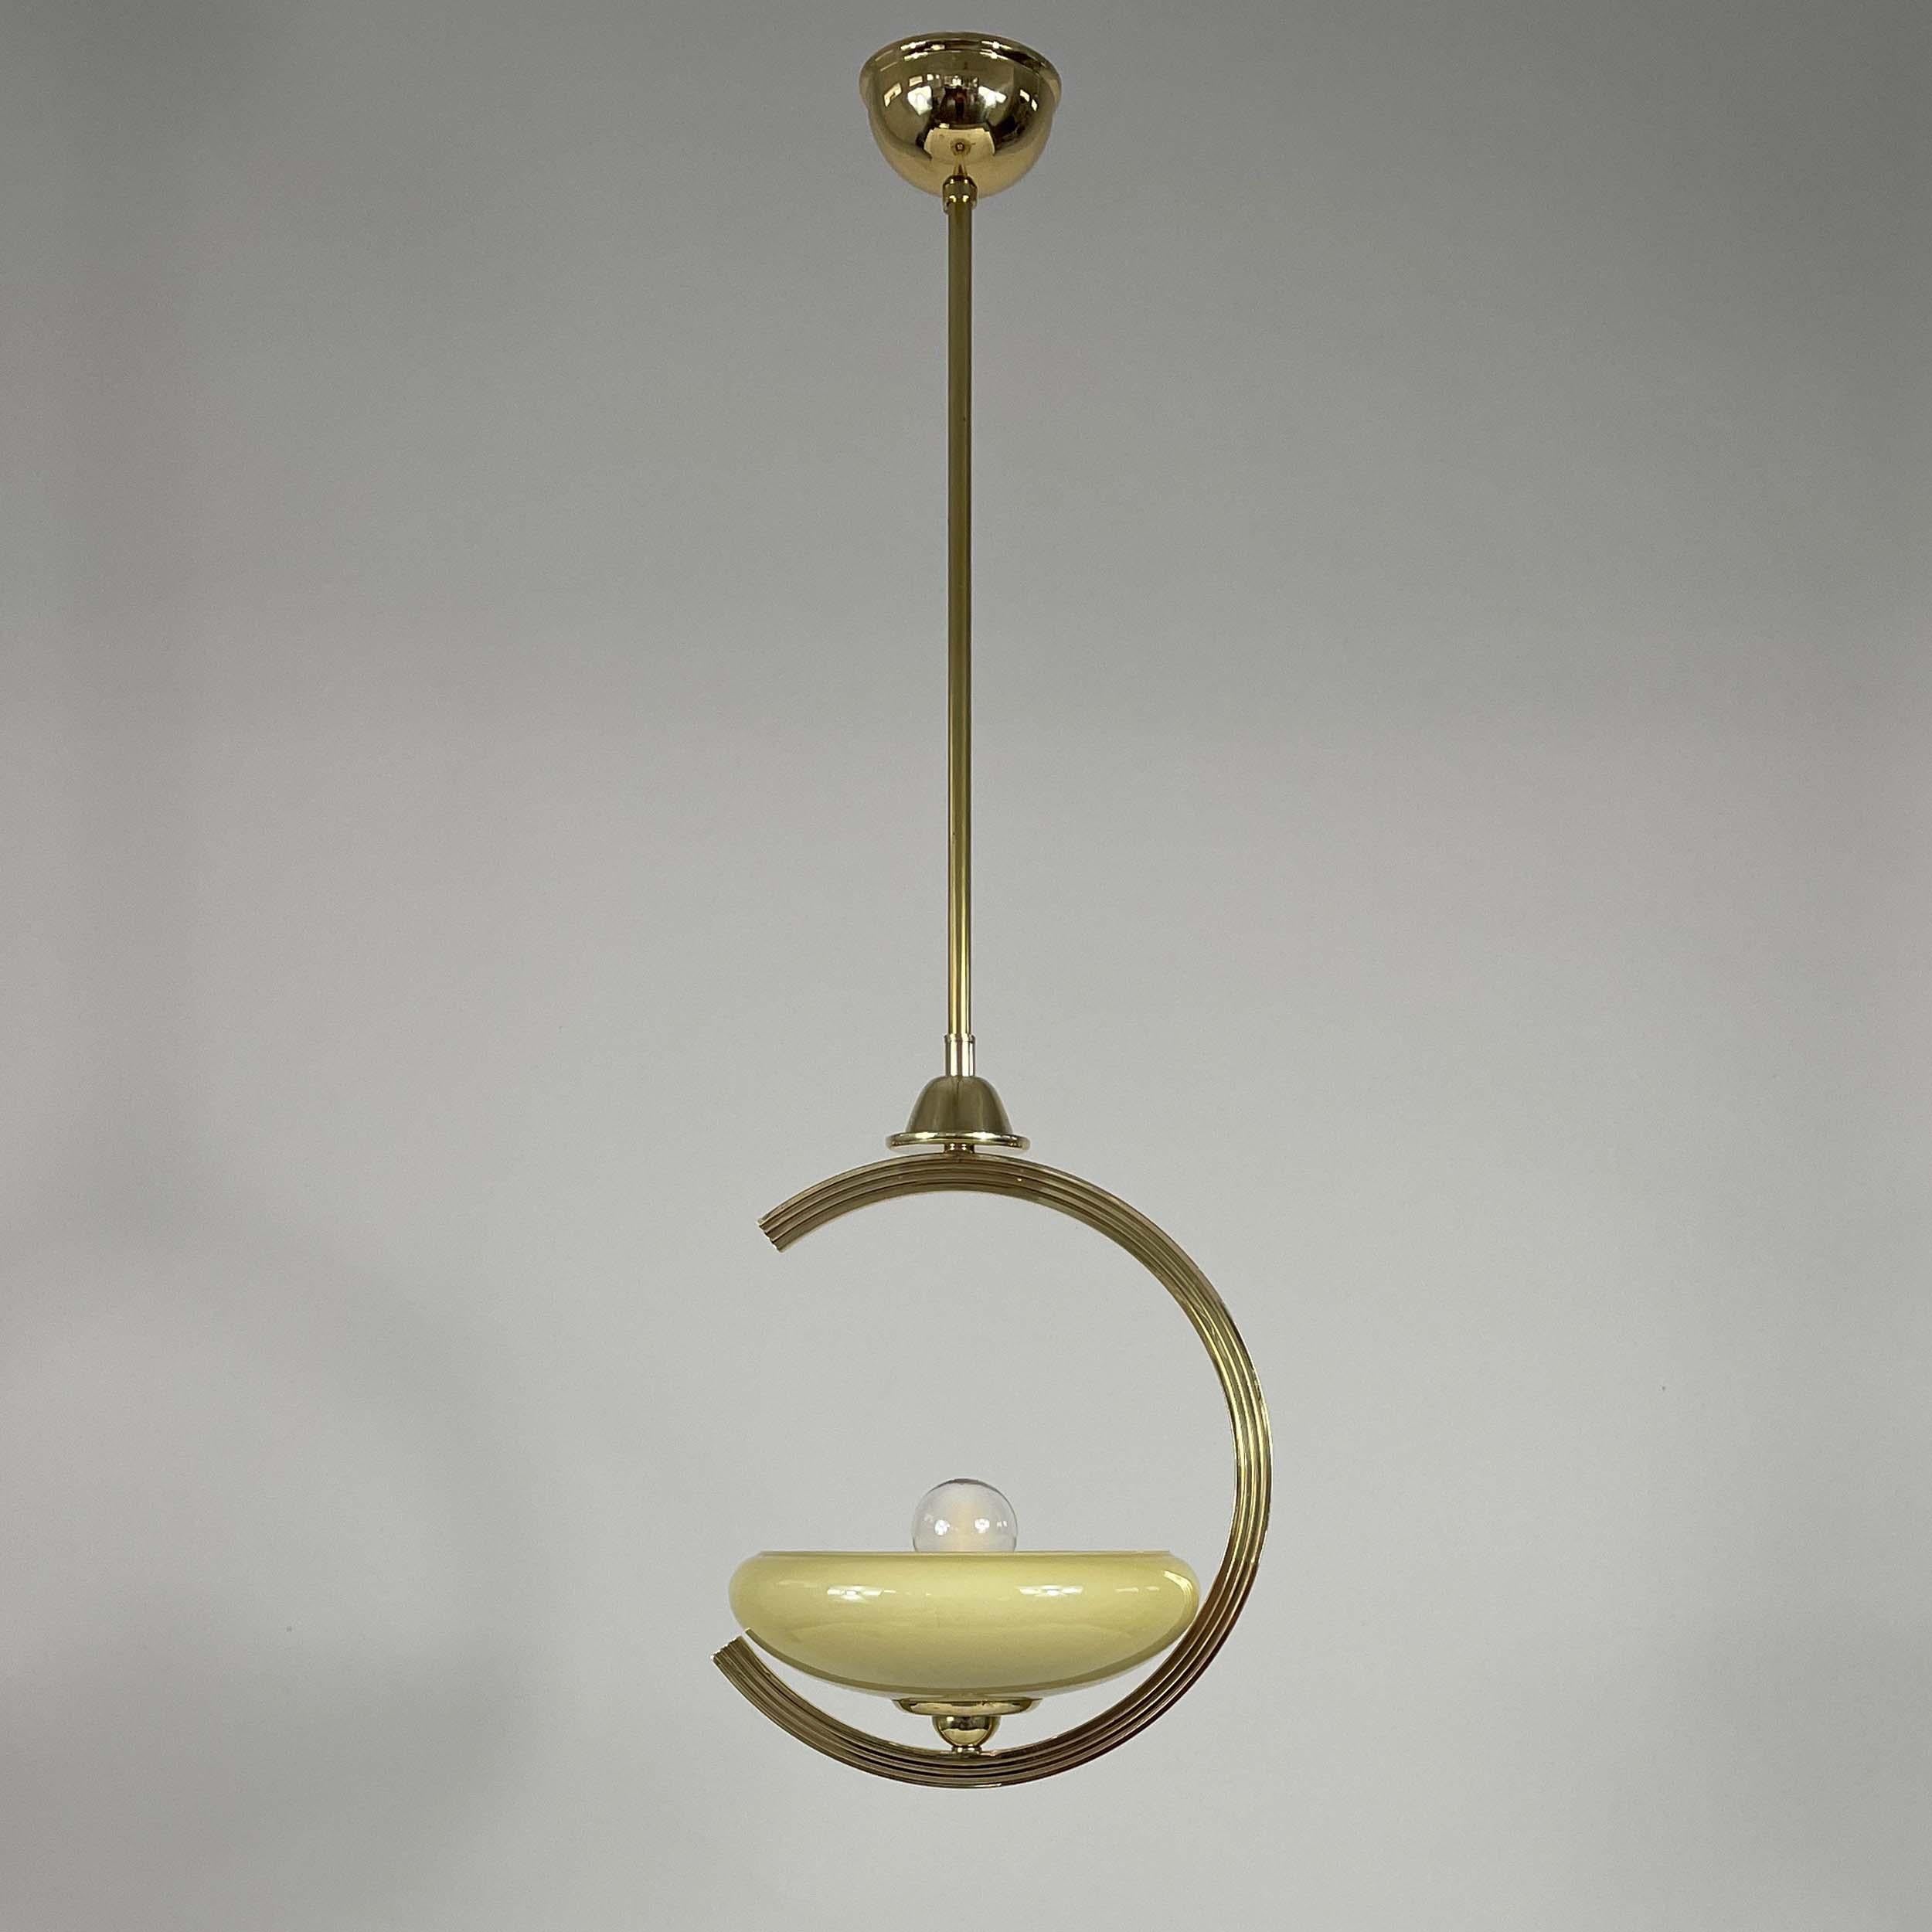 Diese Pendelleuchte wurde in den 1940er Jahren in Schweden entworfen und hergestellt. Der Lampenschirm ist cremefarben/sandfarben und die Beschläge sind aus Messing.

Abmessungen:
Gesamthöhe 30